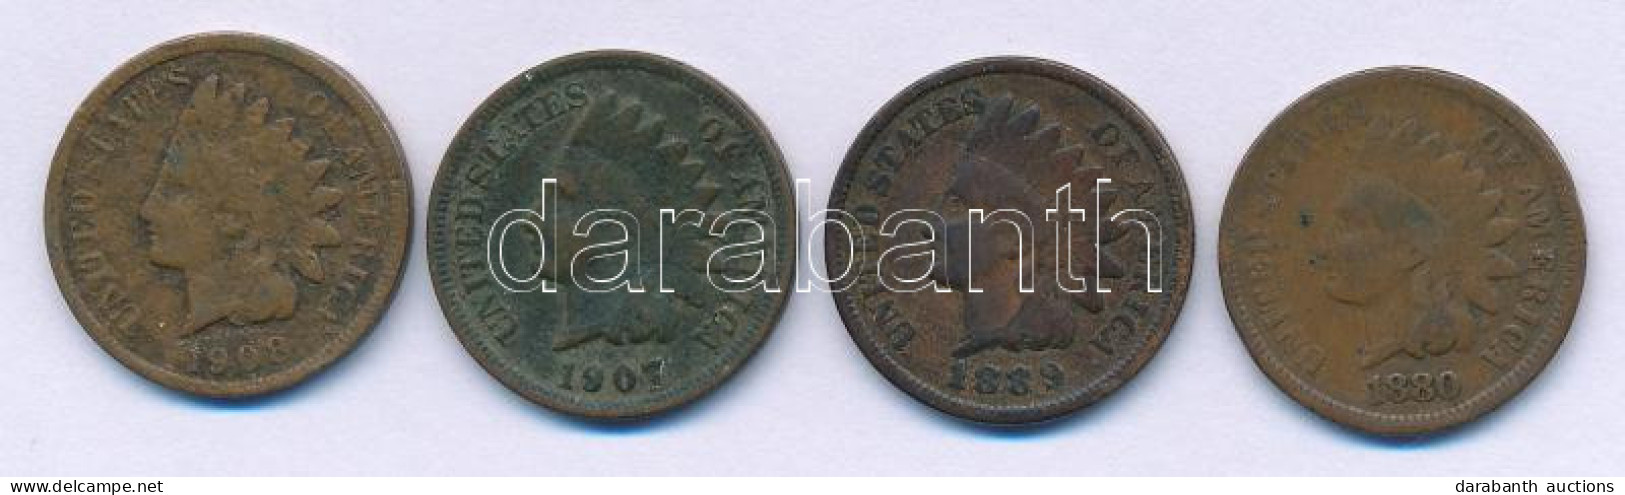 Amerikai Egyesült Államok 1880-1908. 1c Bronz "Indiánfej" (4xklf) T:VF,F Patina USA 1880-1908. 1 Cent Bronze "Indian Hea - Ohne Zuordnung